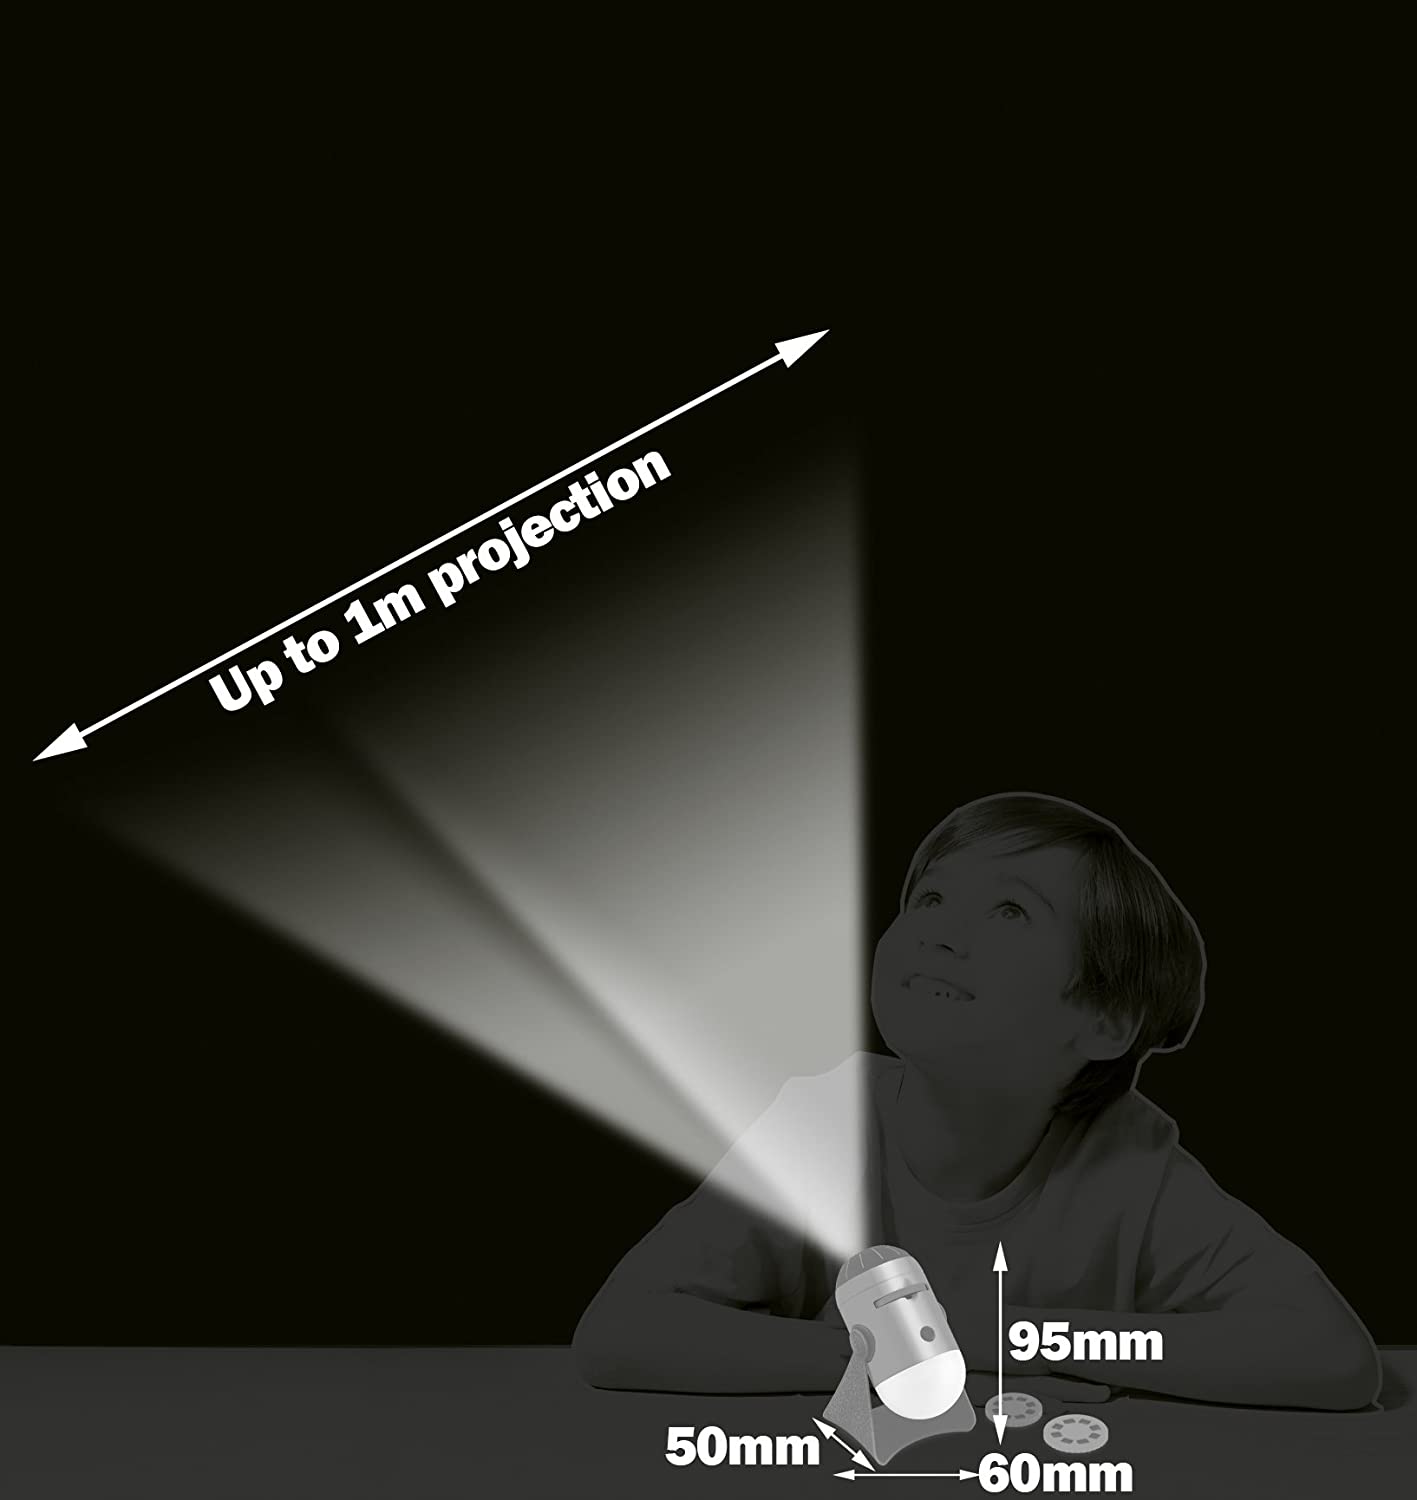 Dimensioni proiettore